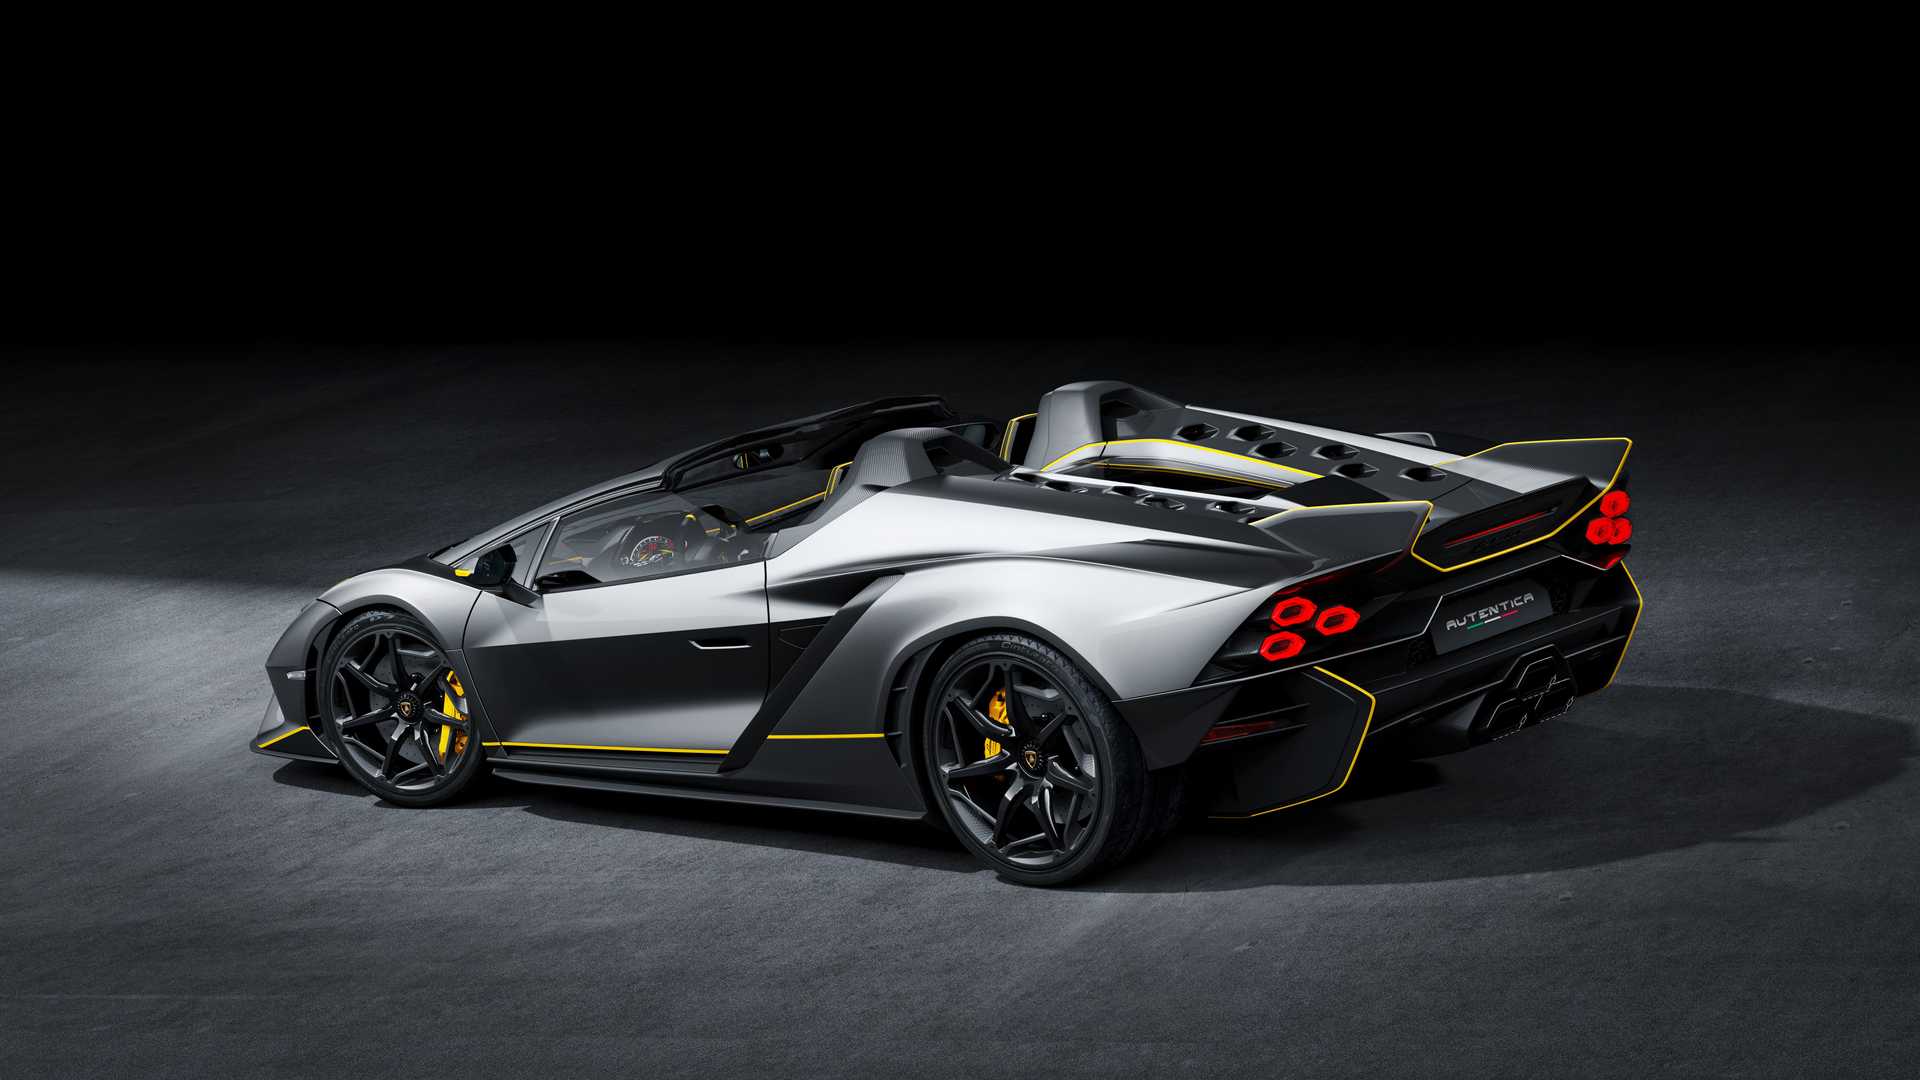 Lamborghini ra mắt bộ đôi siêu xe V12 chạy xăng cuối cùng, sau đây sẽ toàn siêu xe điện êm ru chưa biết nẹt pô kiểu gì - Ảnh 16.